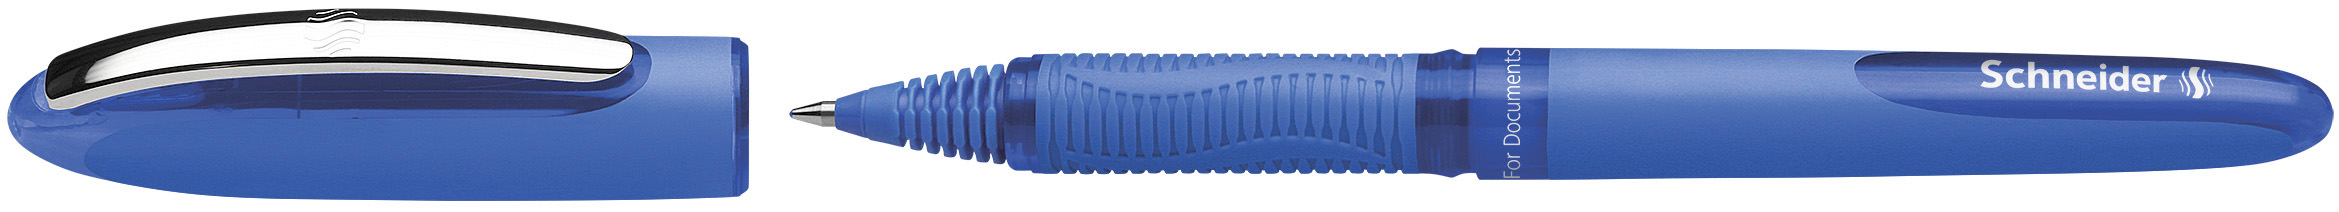 SCHNEIDER Rollerball Hybrid 0,3mm 183103 bleu bleu